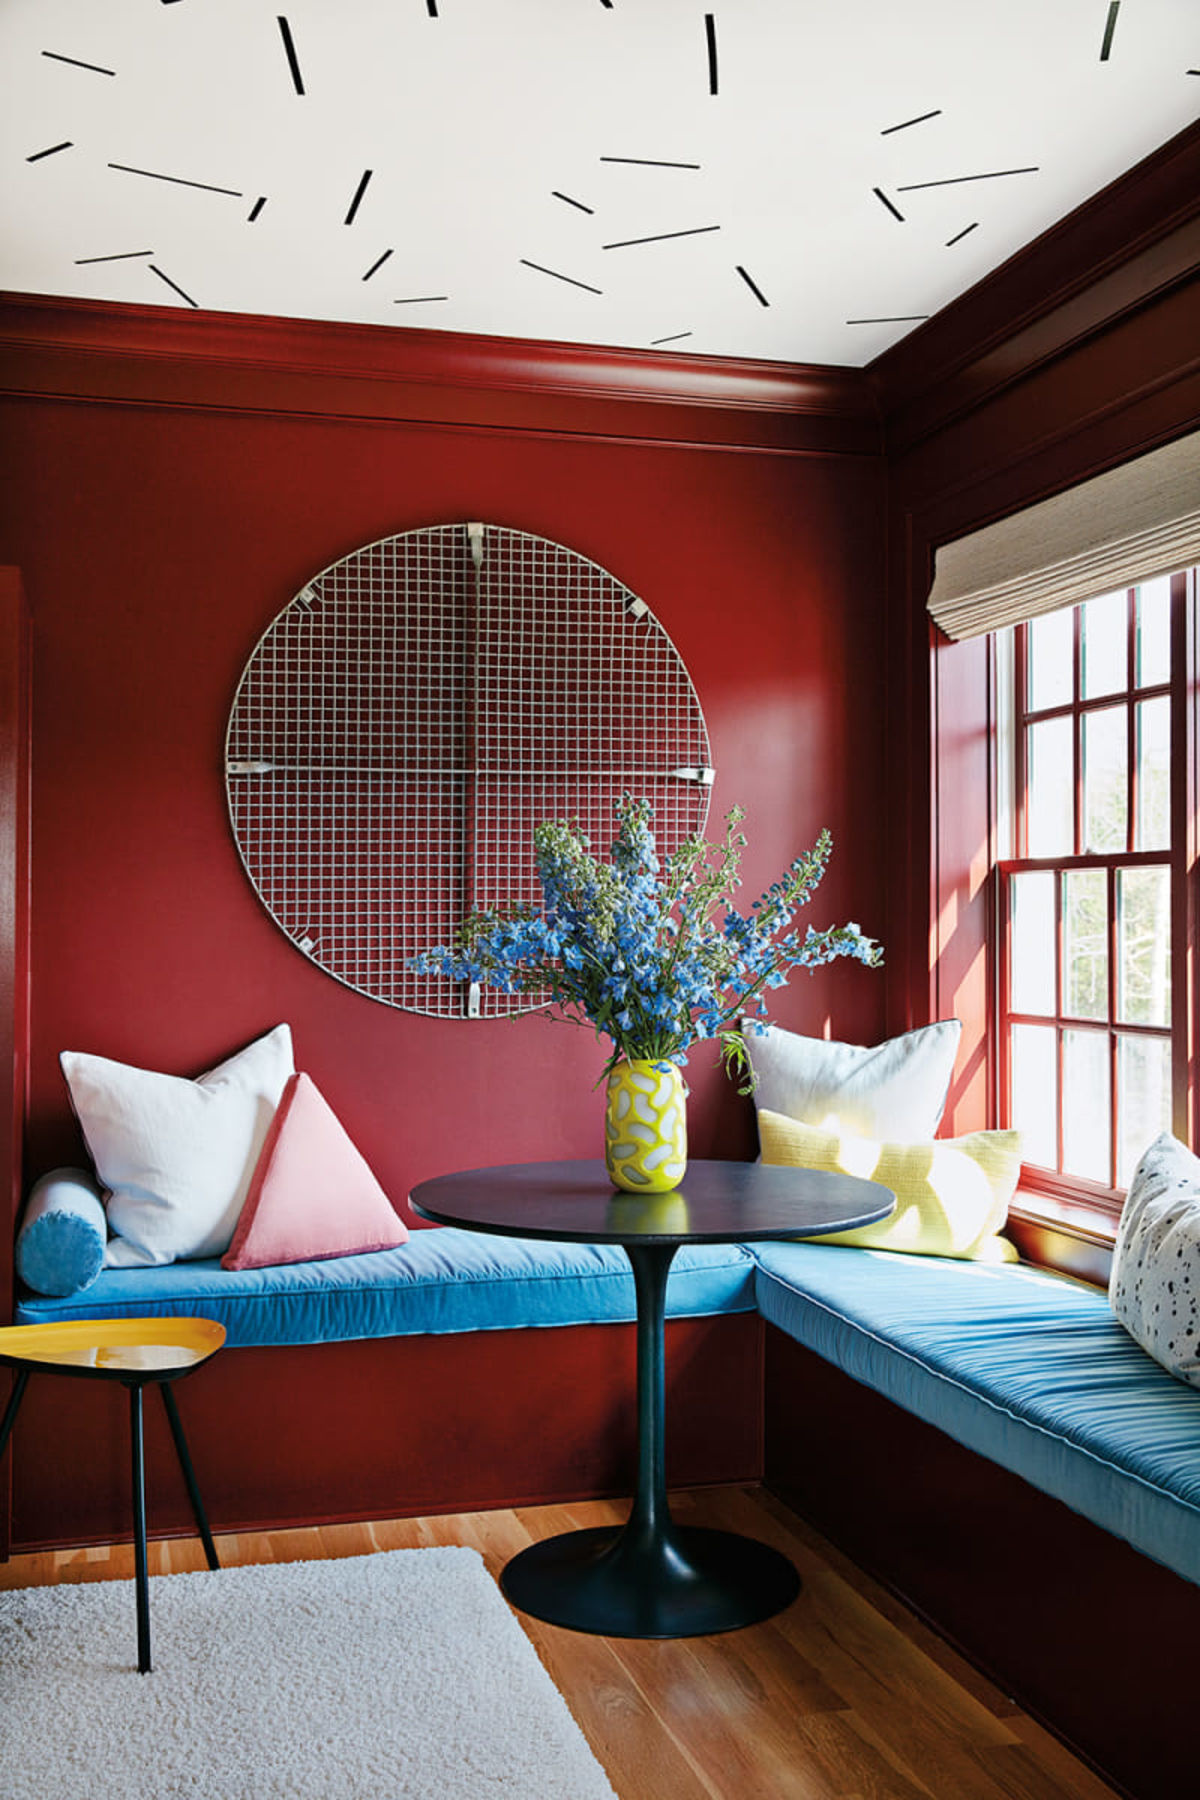 Ngôi nhà của một nghệ sĩ tại Georgia (Hoa Kỳ) với phòng khách đặc biệt bố trí ngay cạnh bệ cửa sổ. Bức tường màu đỏ thẫm, trần nhà độc đáo, một chiếc bàn tròn cùng bệ cửa góc L tạo nên một khu vực chuyện trò thân tình, ấm áp.